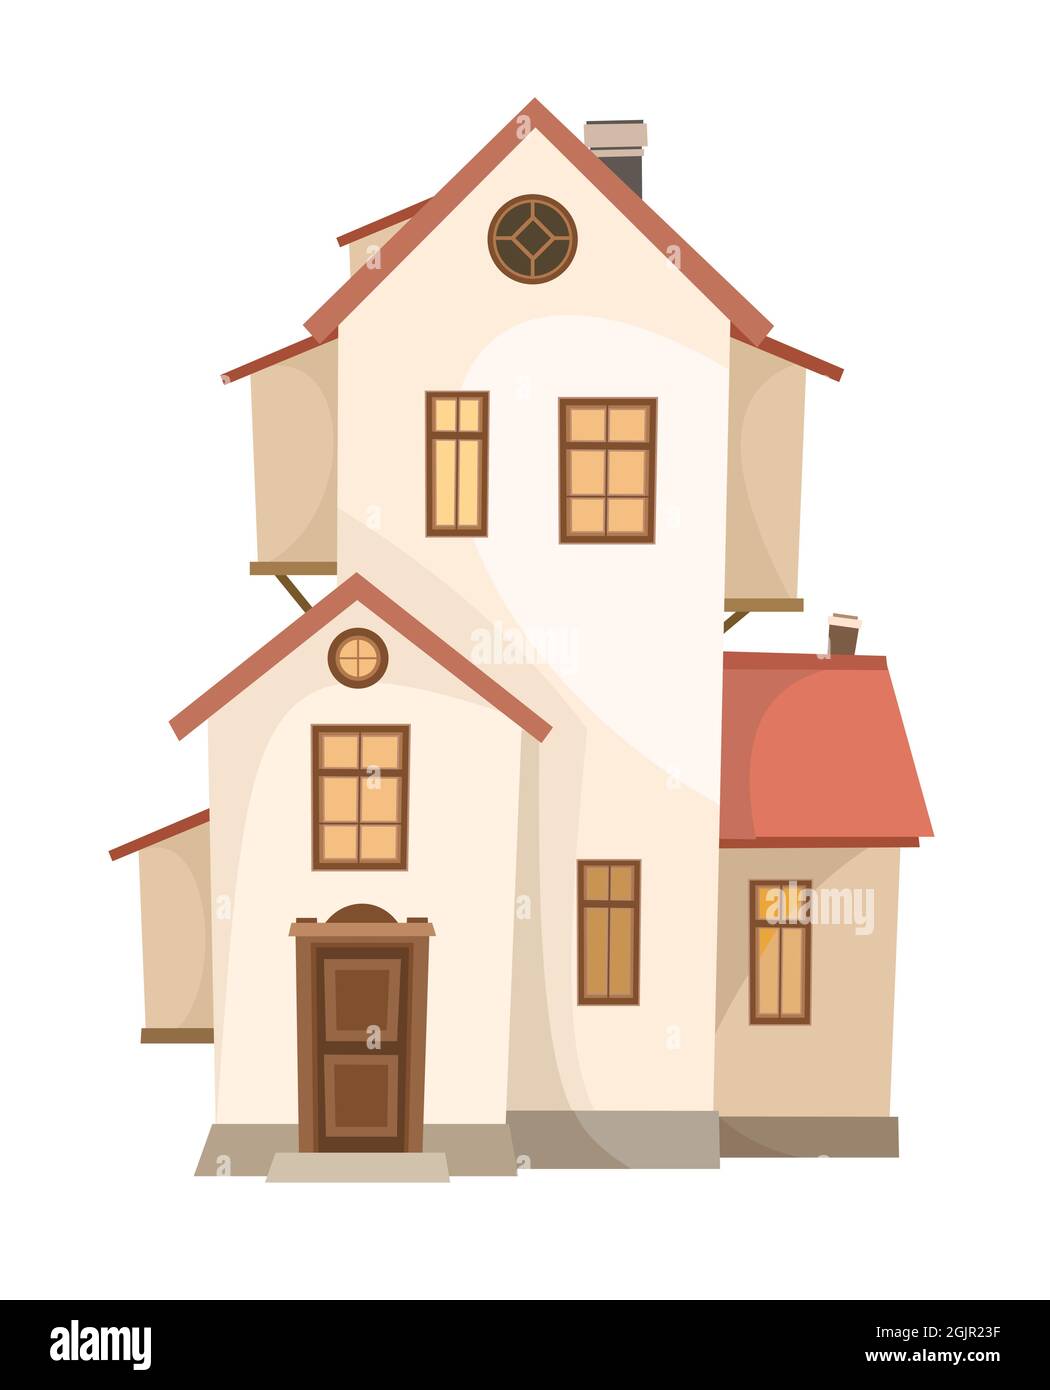 Hohes Cartoon-Haus mit einem Giegeldach. Gemütliche, einfache ländliche Wohnung in einem traditionellen europäischen Stil. Zweistöckig. Süßes Zuhause. Isoliert auf Weiß Stock Vektor